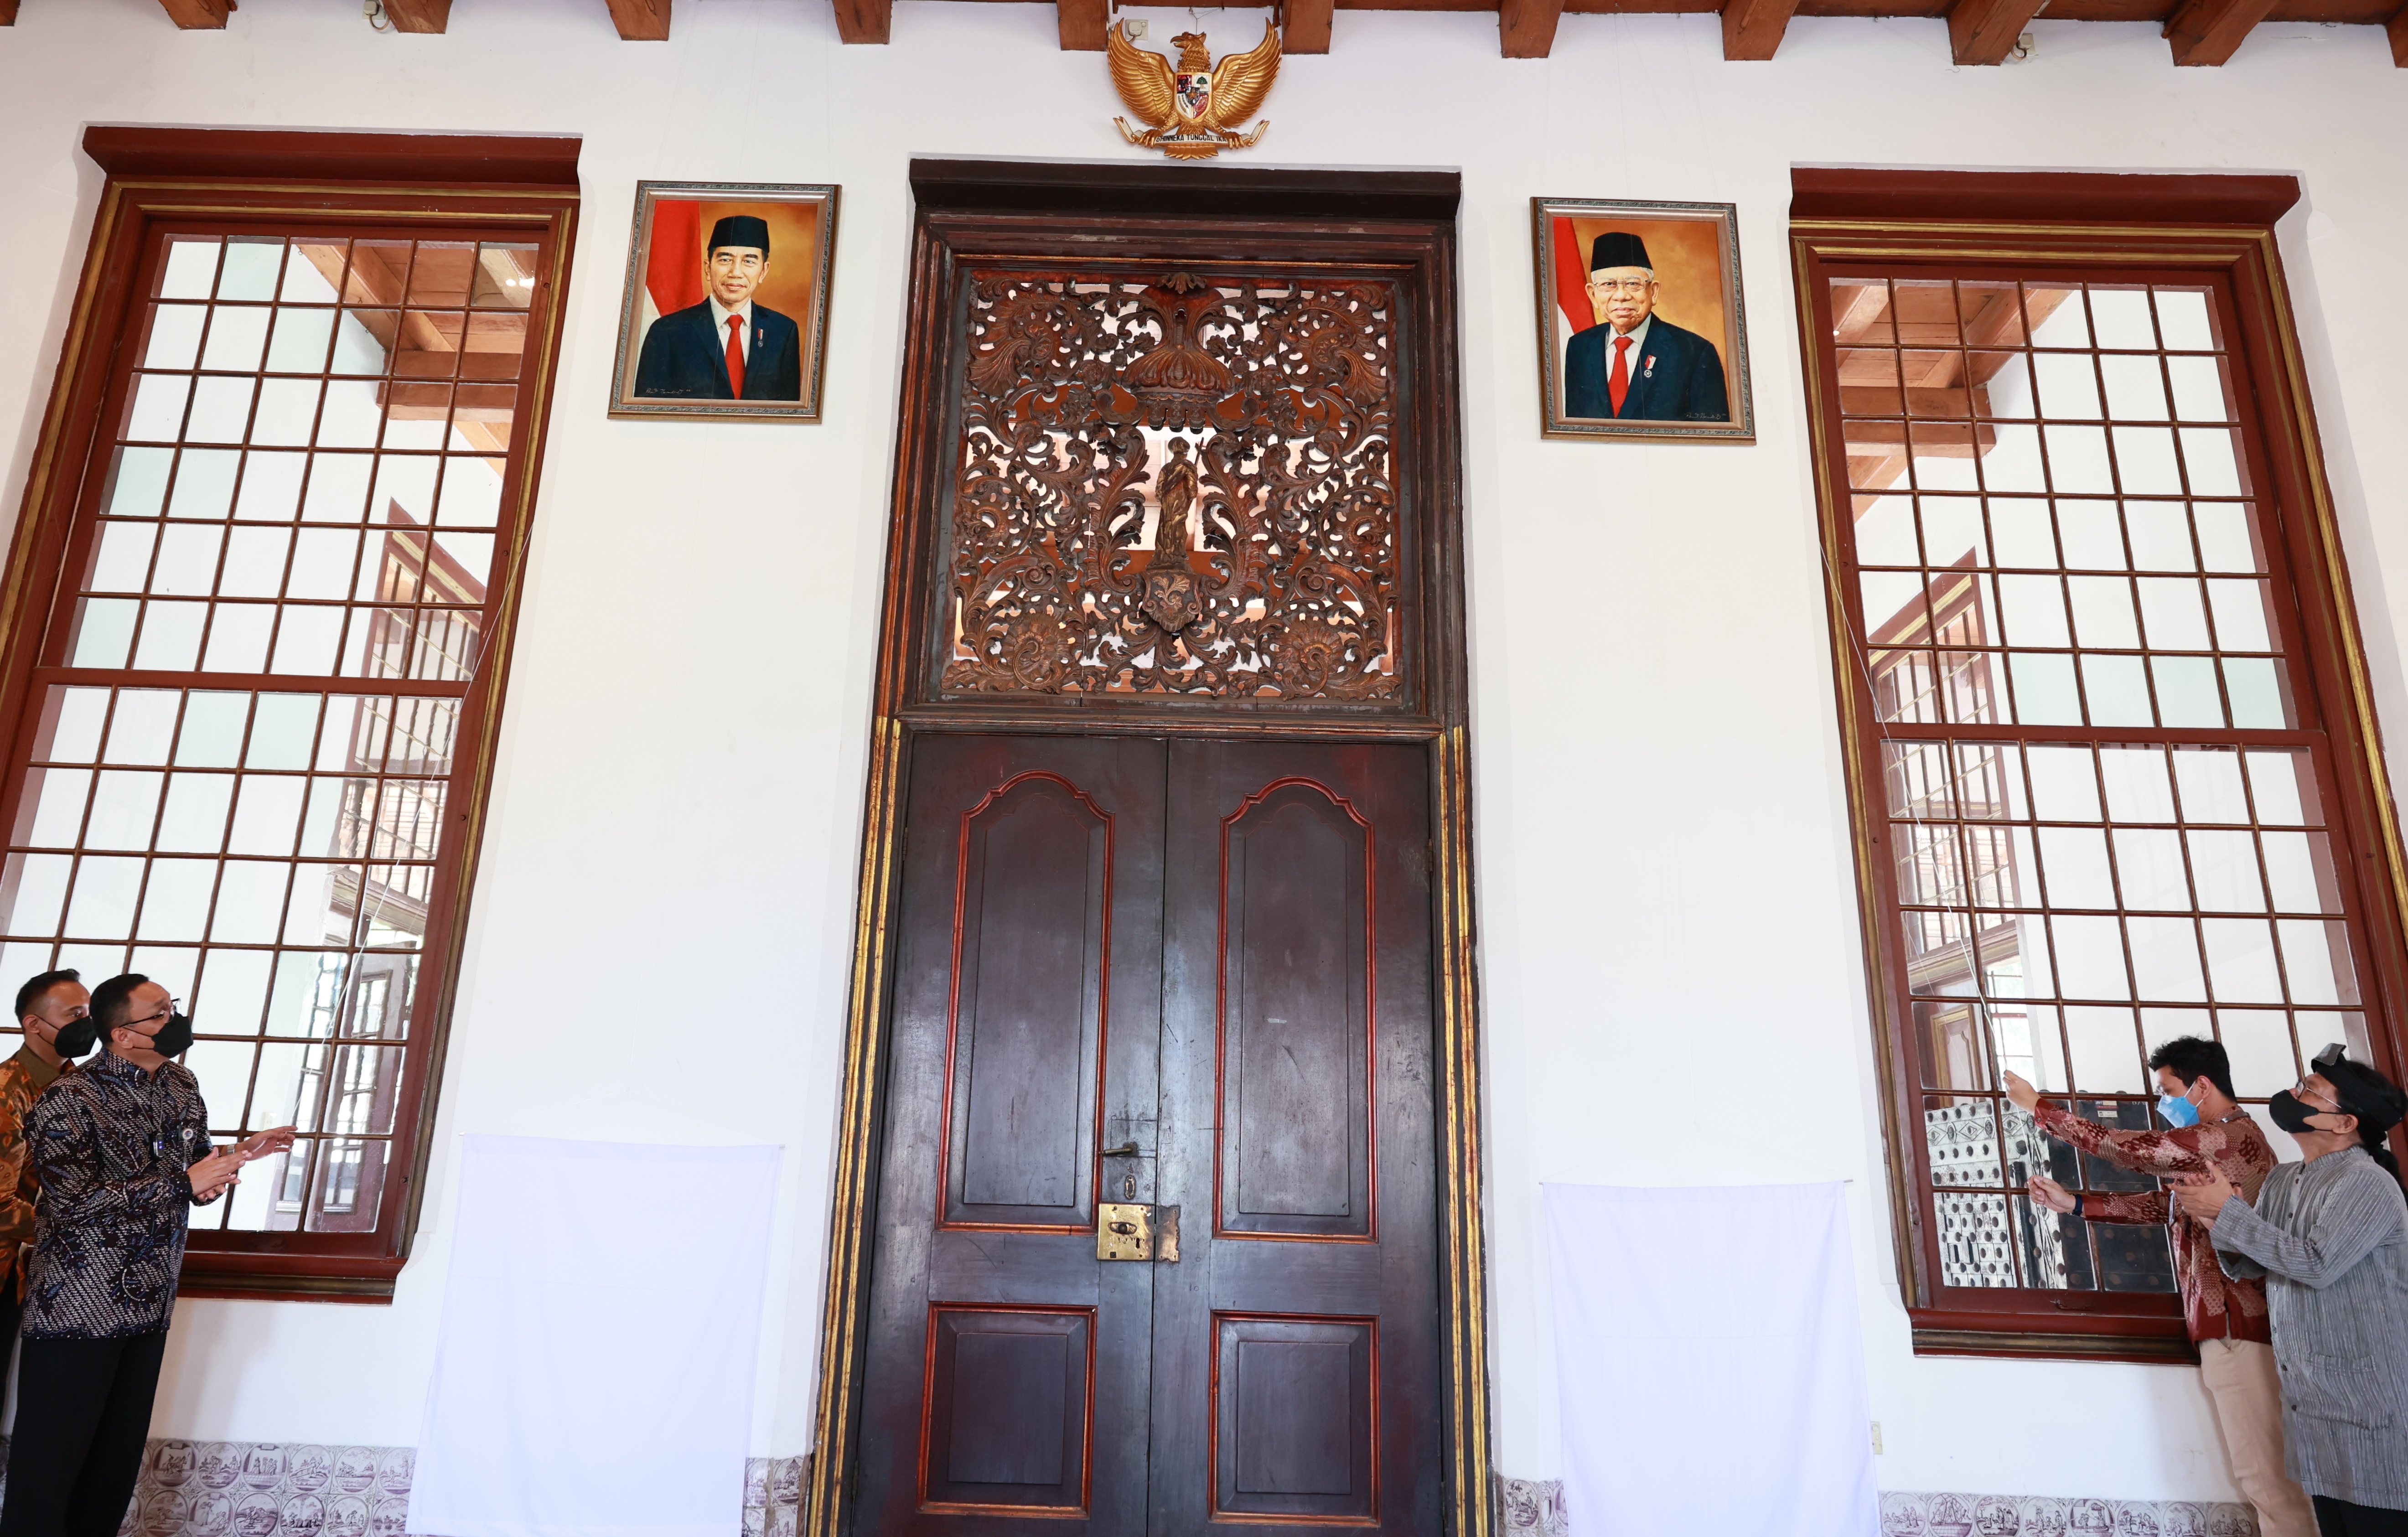 Penyerahan Lukisan Presiden RI dari Perwakilan Masyarakat  kepada ANRI sebagai Dukungan Pelestarian Memori Pimpinan Negara di Gedung Cagar Budaya ANRI - Gajah Mada